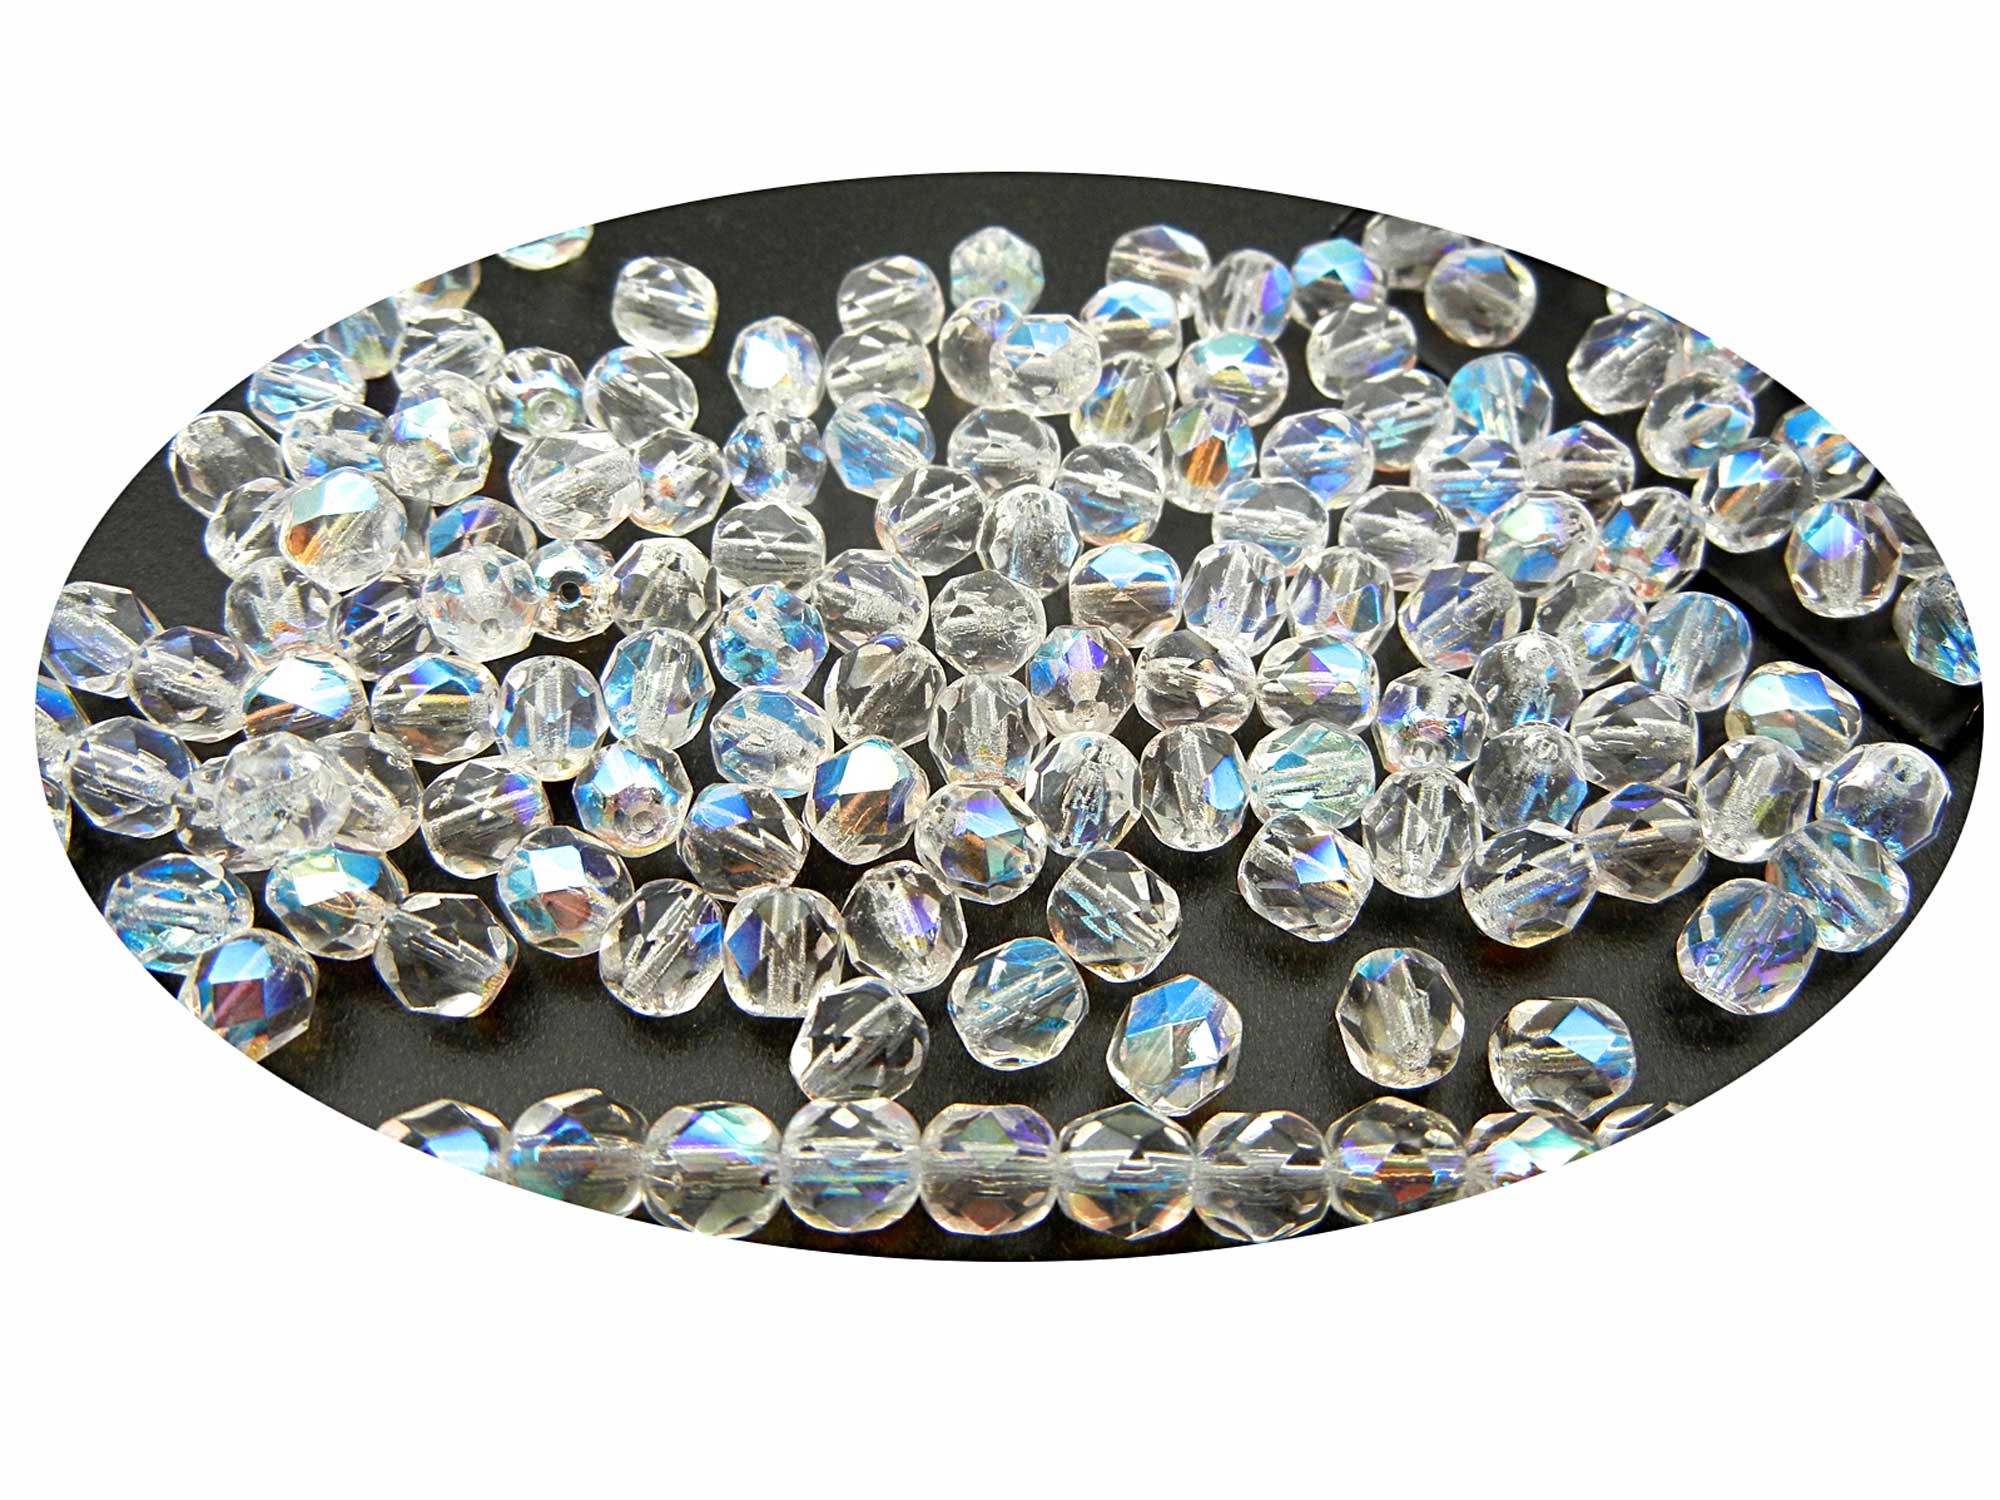 Czech Quality Hot Fix AB Crystal Loose Rhinestone Flatback 3mm (10ss)  10,000 Pieces Clear Crystal Gems